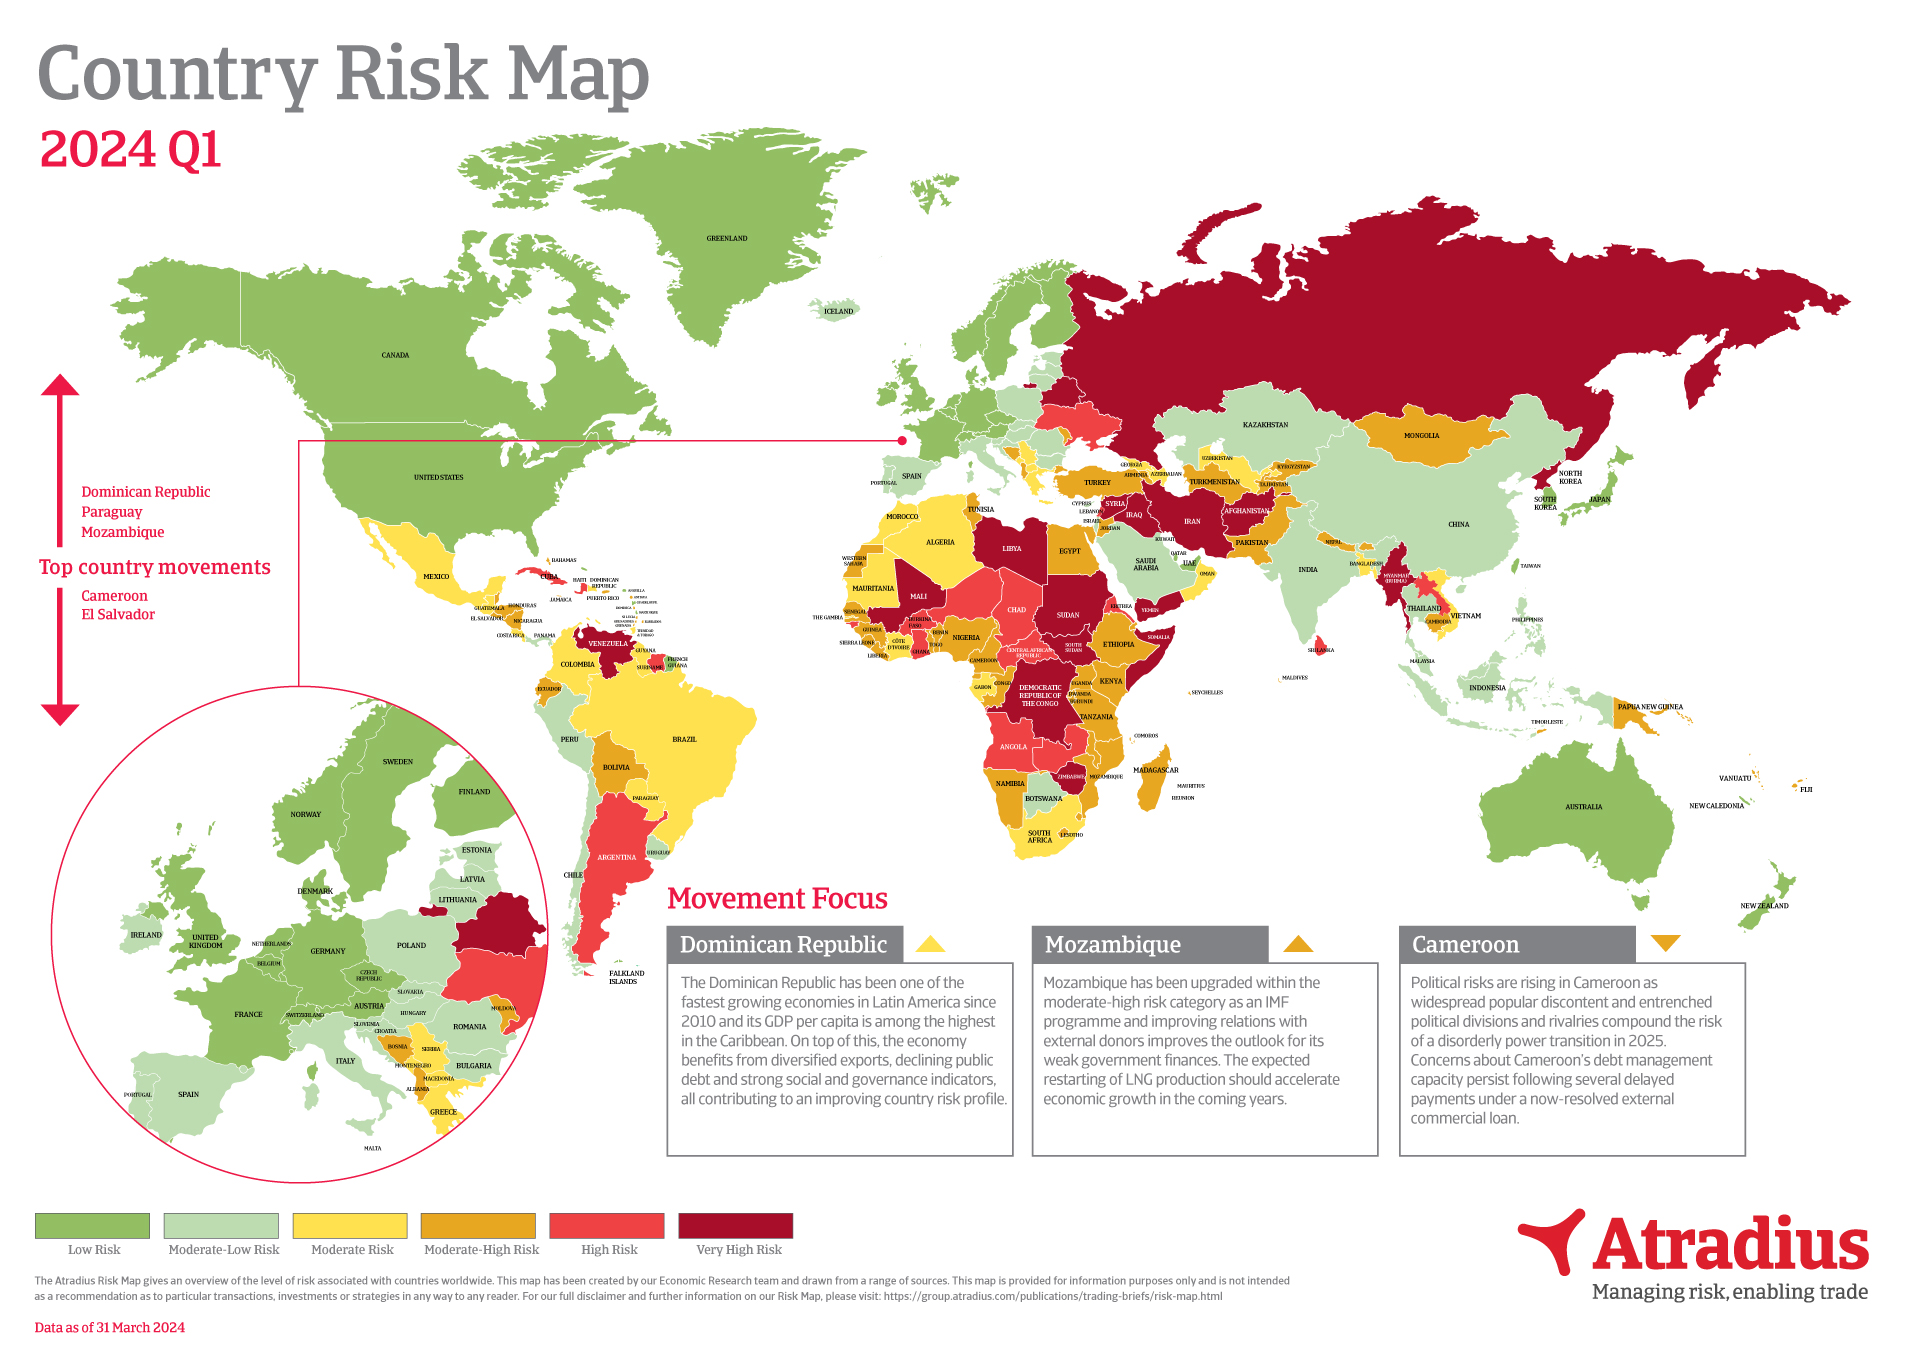  (fr_FR)Carte des risques pays Q1 2024 (image)